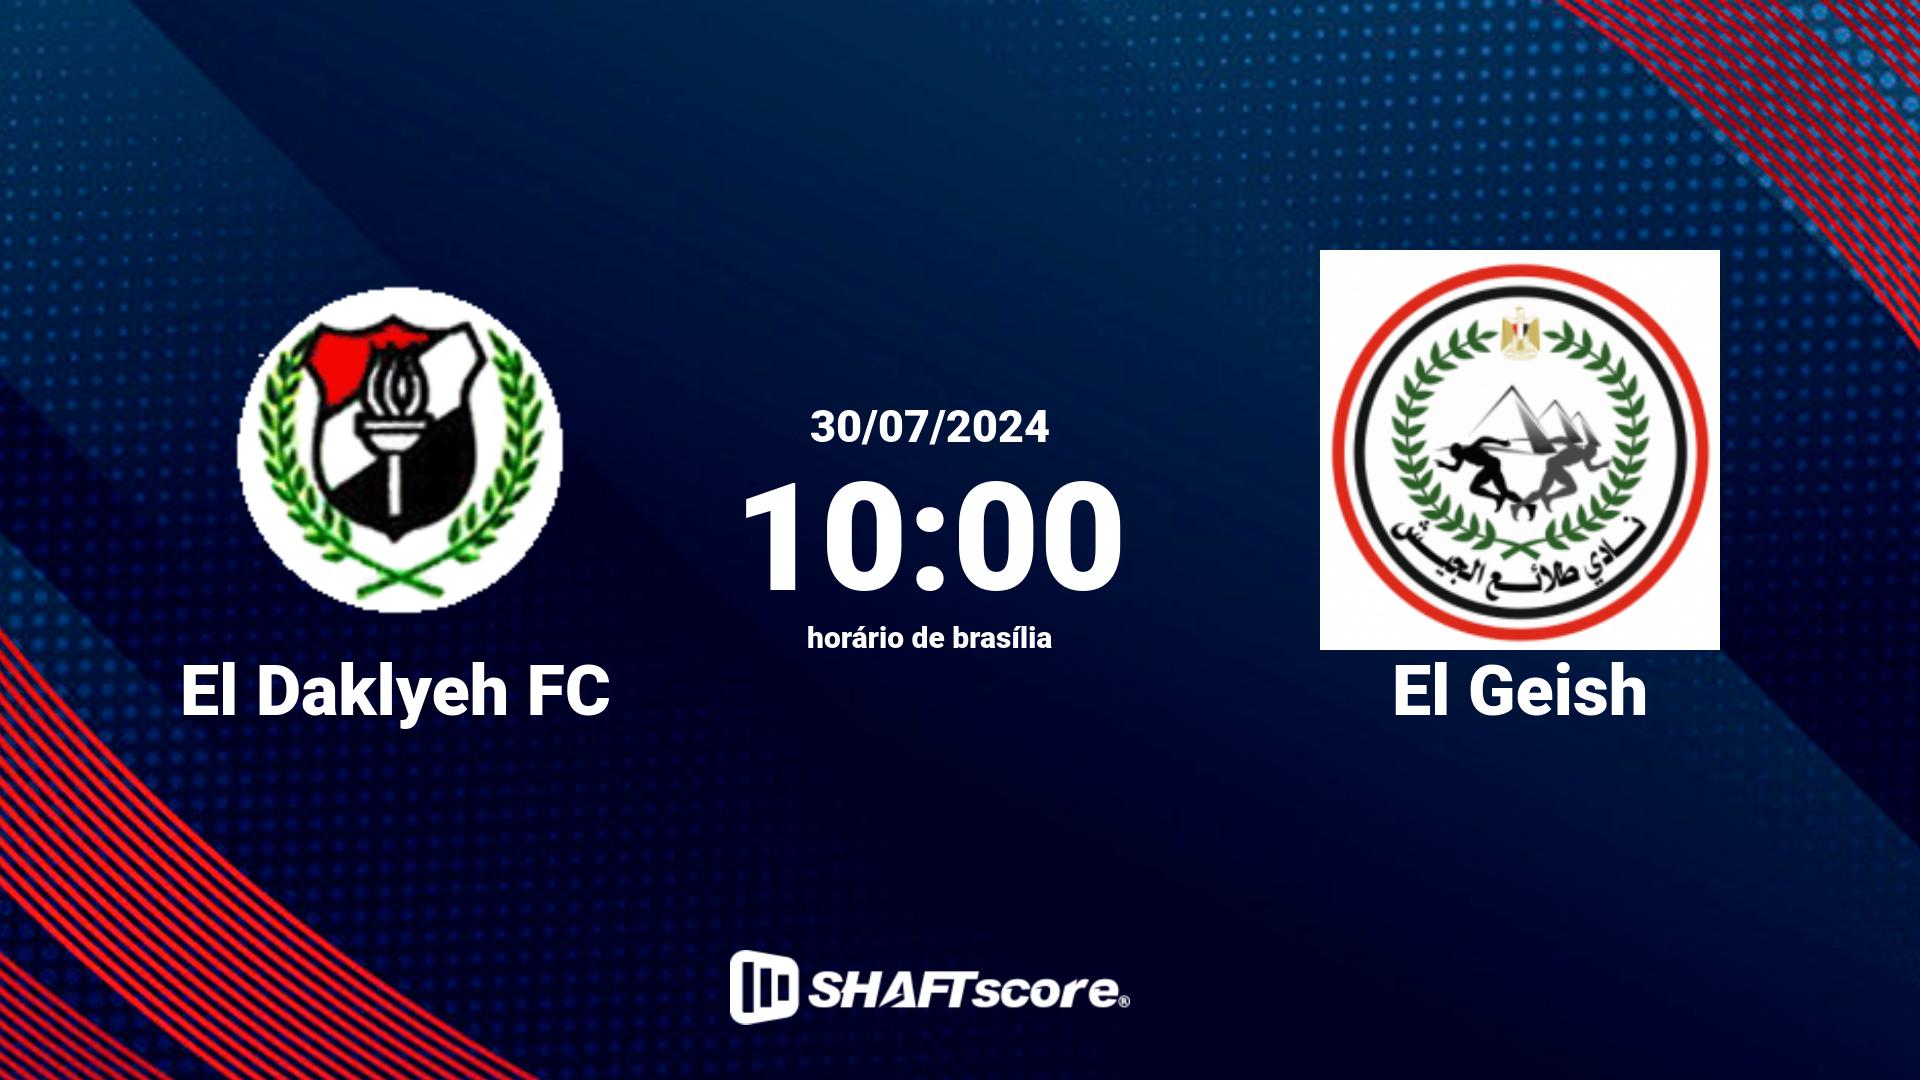 Estatísticas do jogo El Daklyeh FC vs El Geish 30.07 10:00